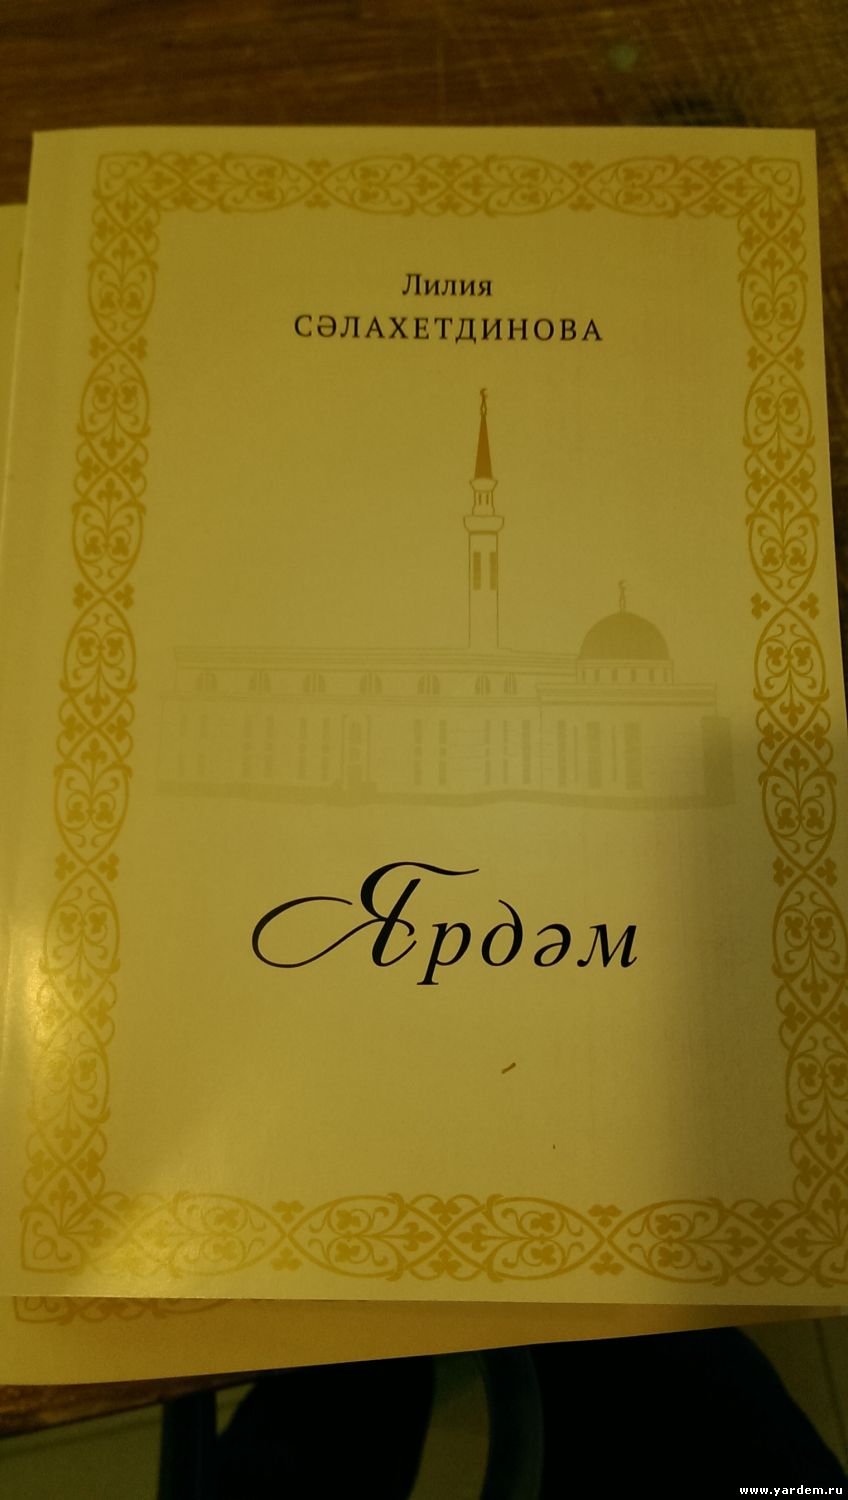 В мечети "Ярдэм" состоится презентация книги "Ярдэм" Лилии Салахутдиновой. Общие новости